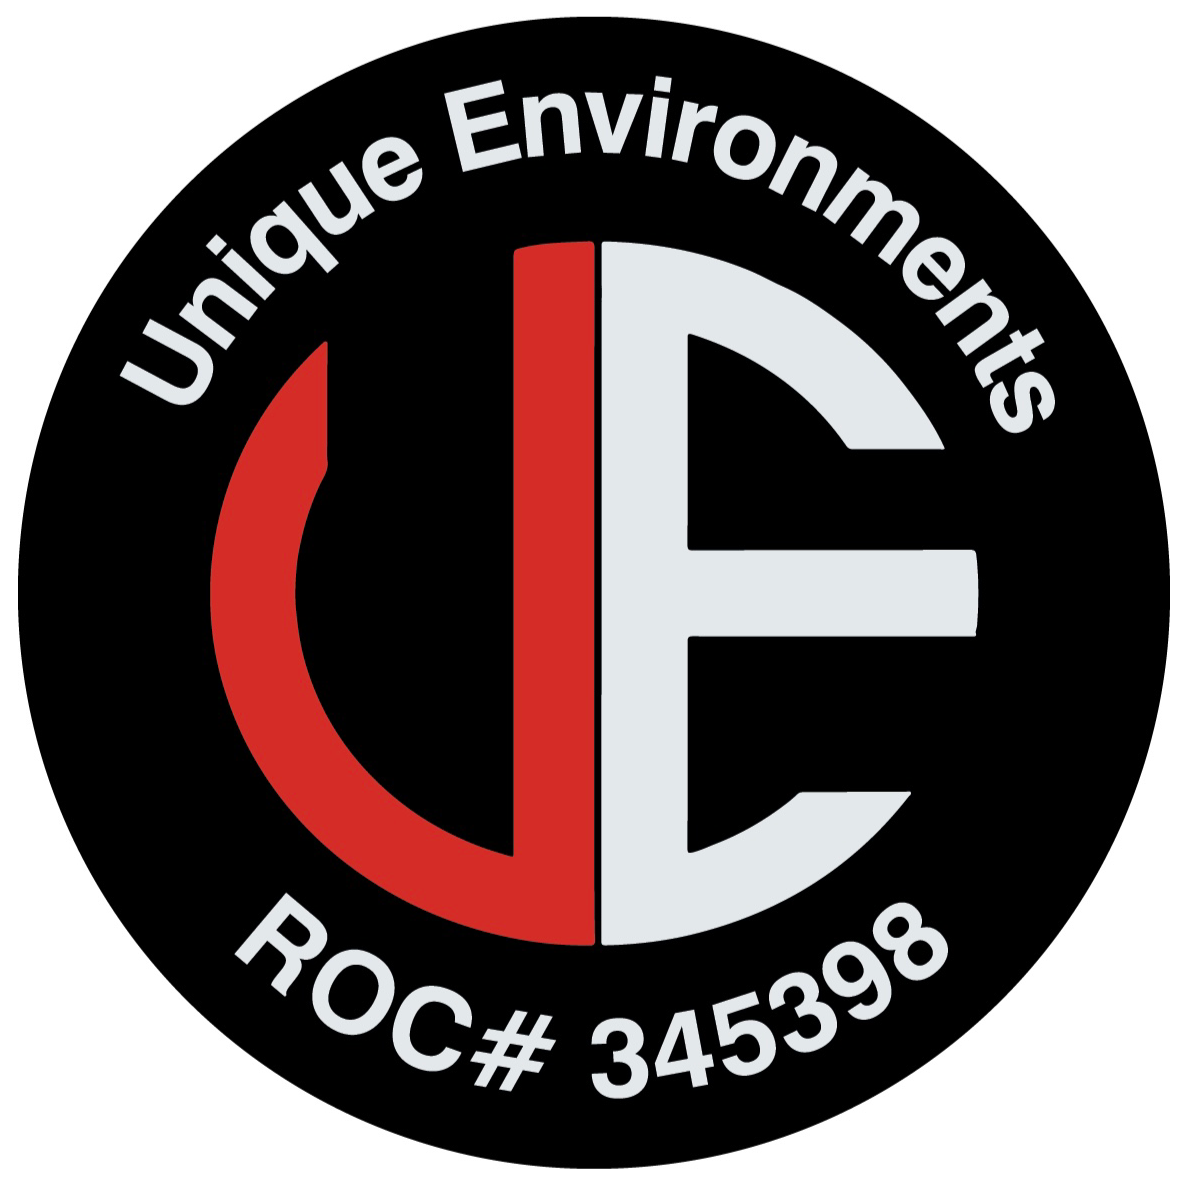 Unique Environments LLC